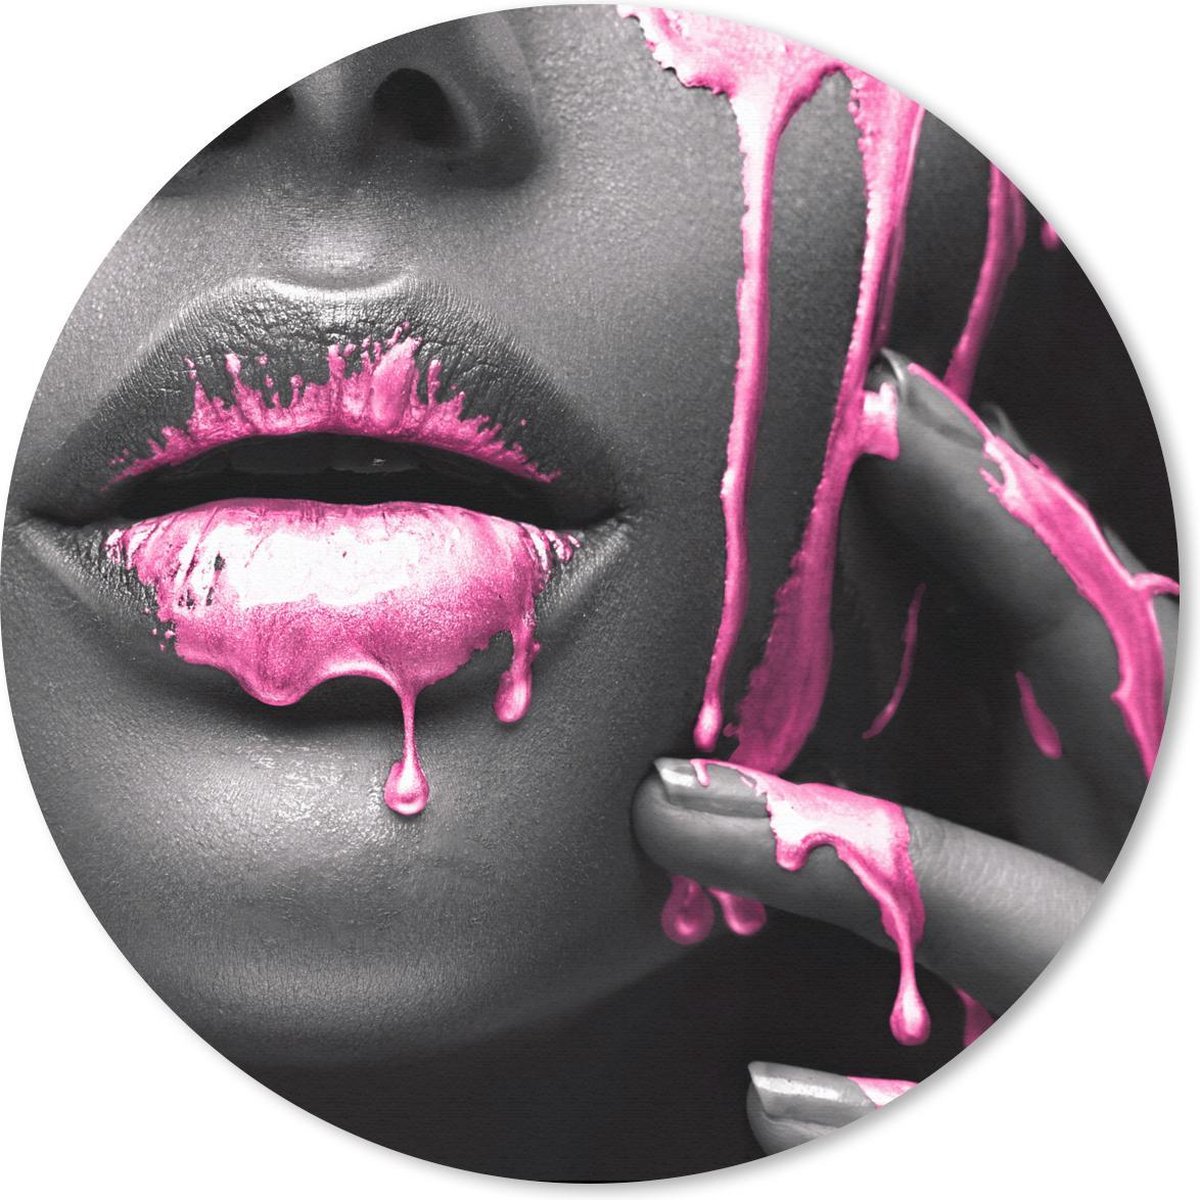 Muismat - Mousepad - Rond - Lippen - Roze - Zwart - 50x50 cm - Ronde muismat